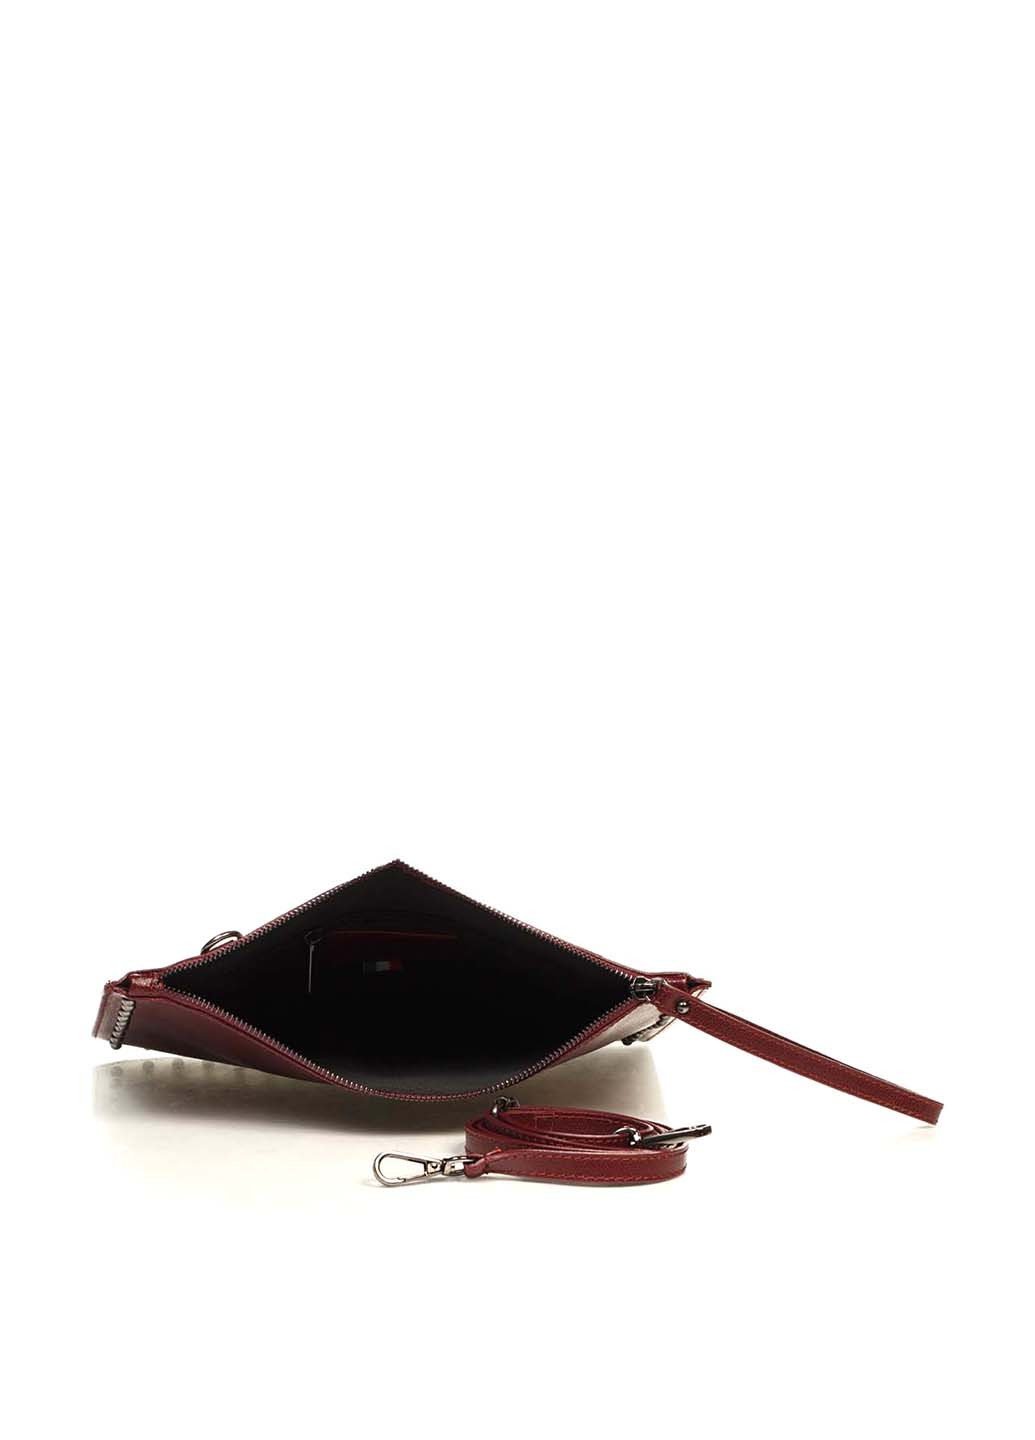 Клатч Genuine Leather однотонный бордовый кэжуал